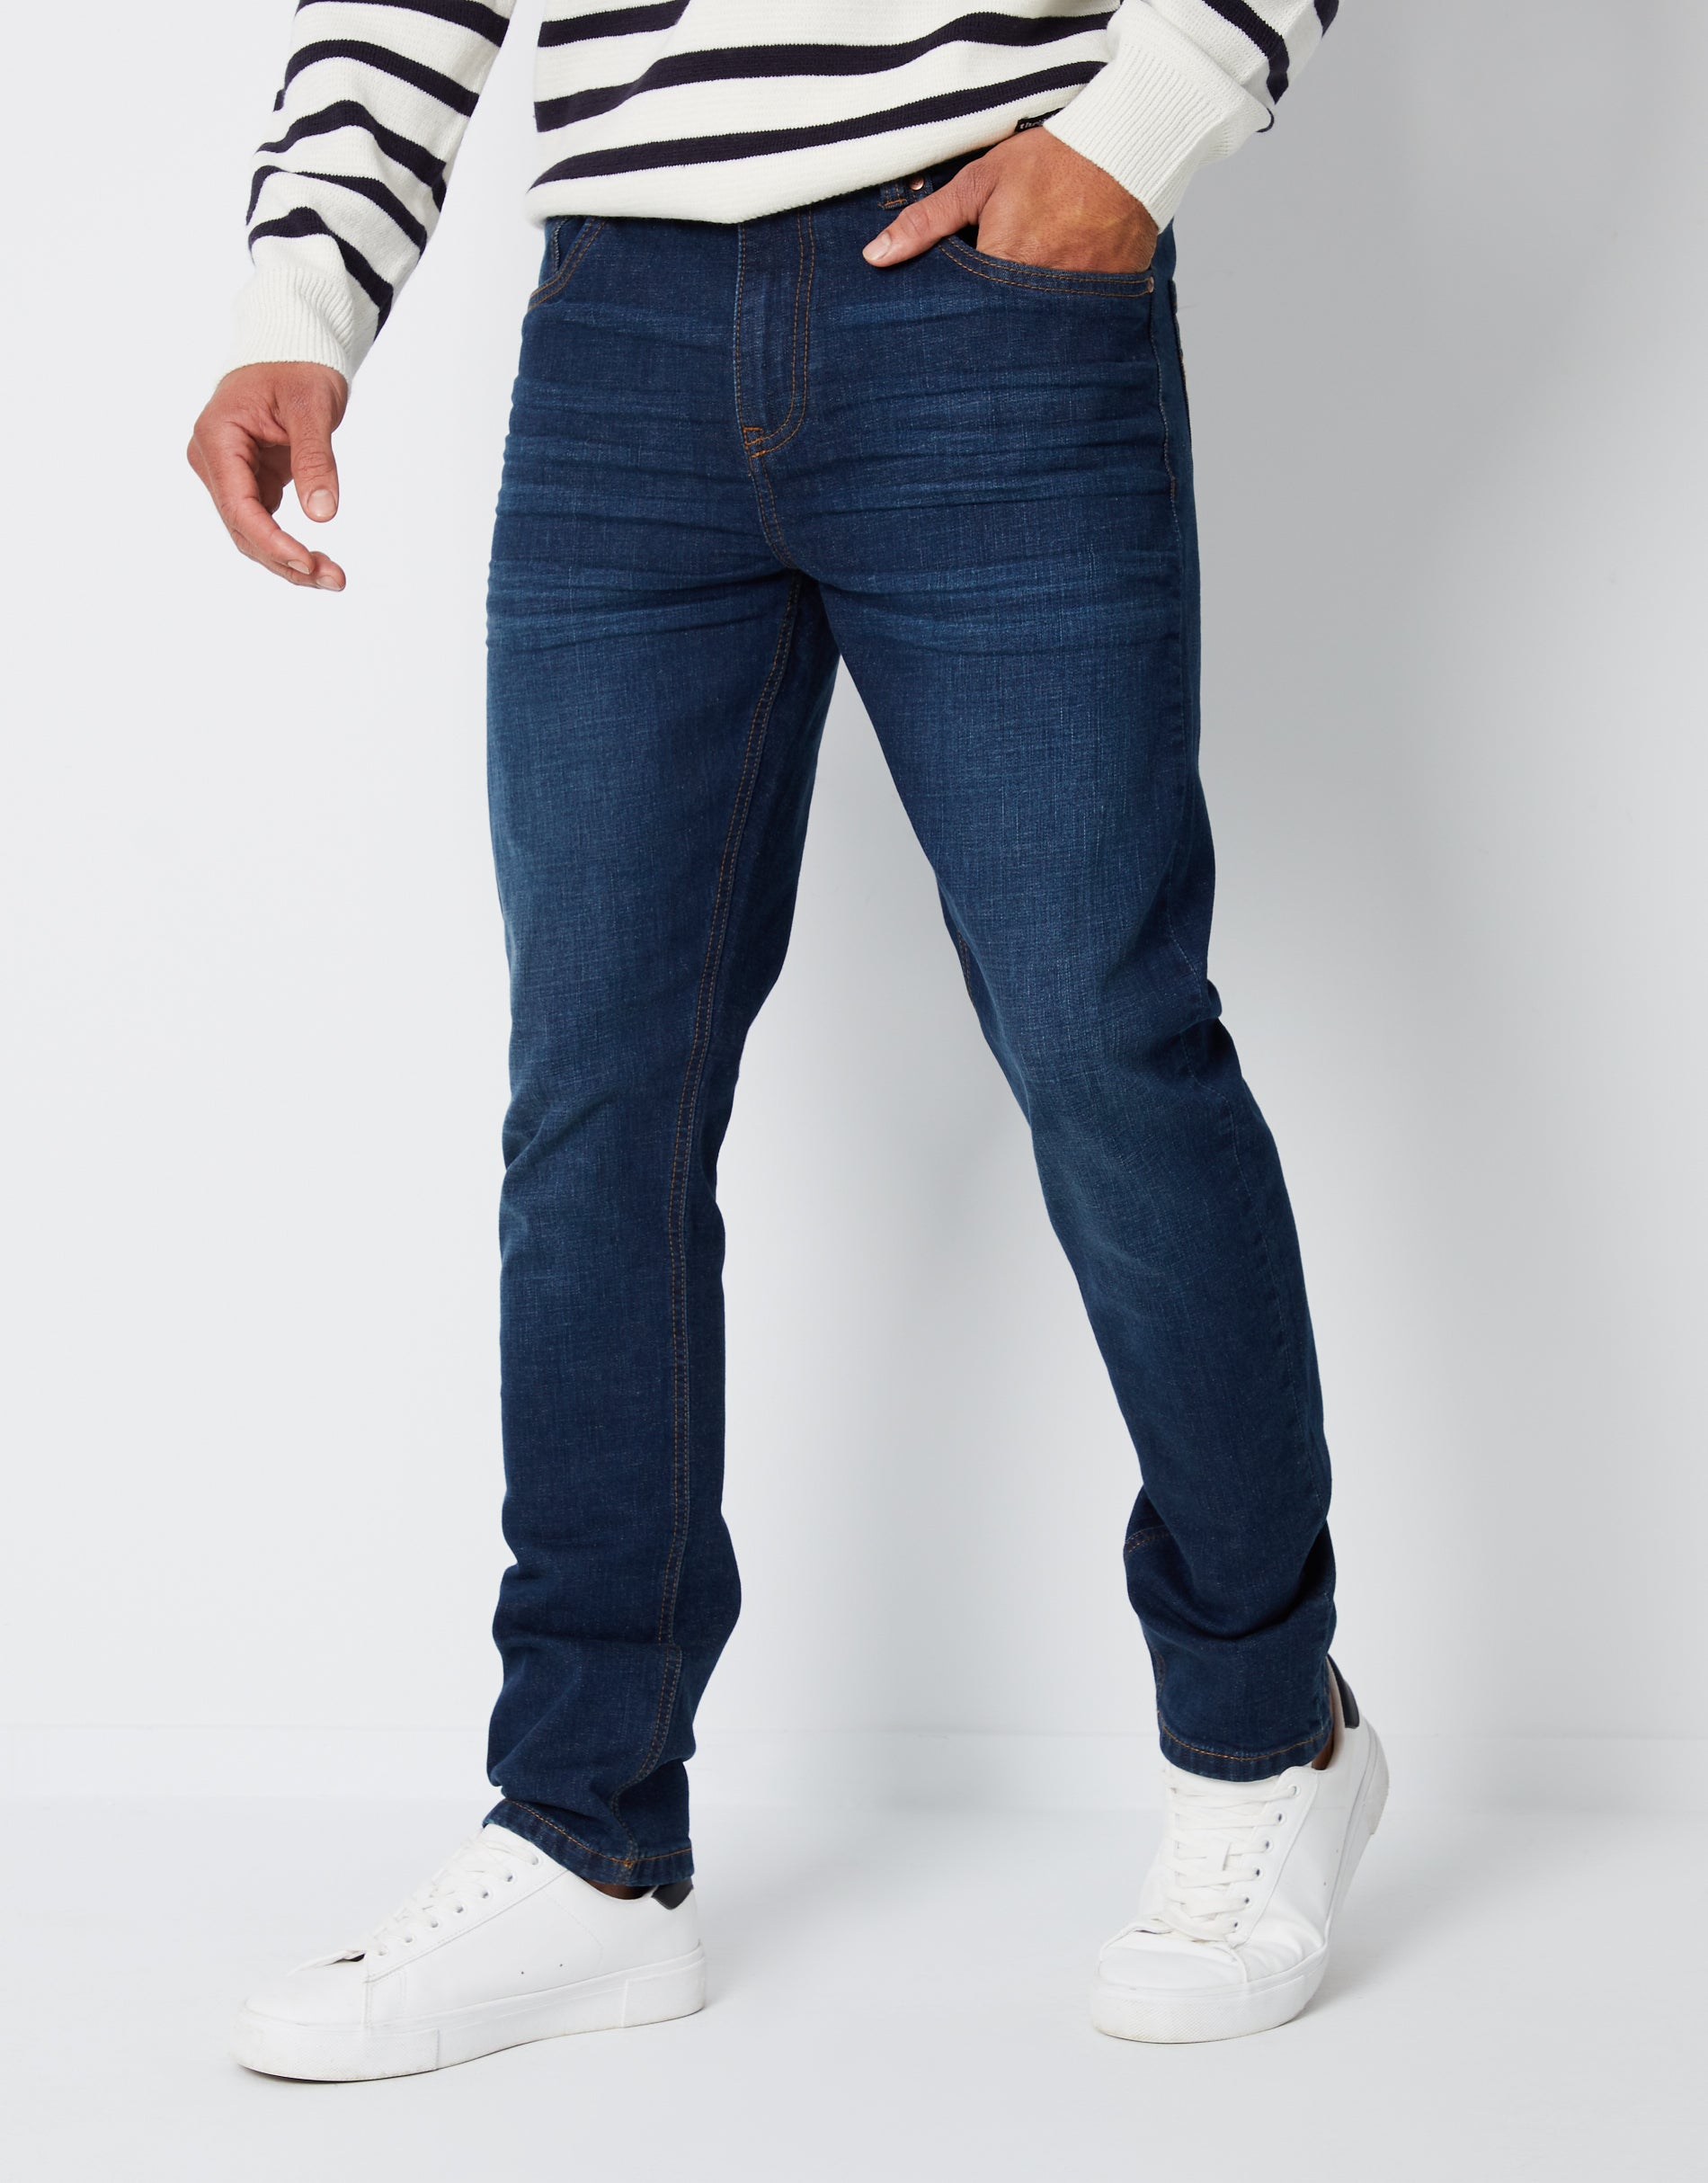 Men's Denim Jeans, Straight Leg & Skinny Jeans – Threadbare